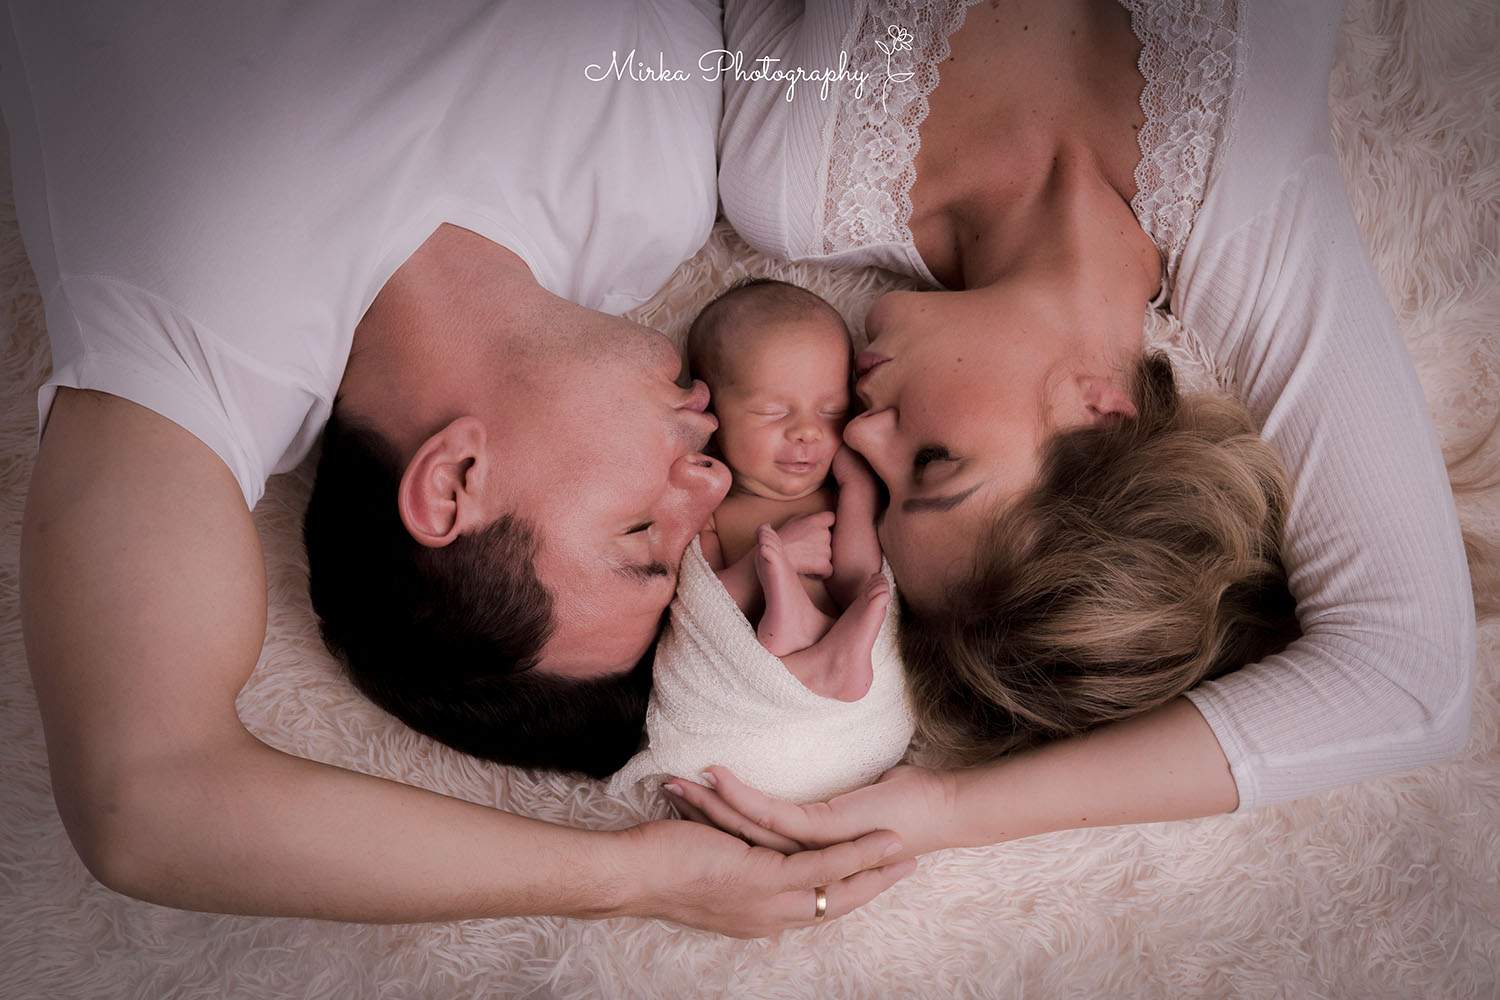 Eltern liegen mit kleinem Baby zwischen sich und mirkaphotography hält das tolle Bild in Kamera fest